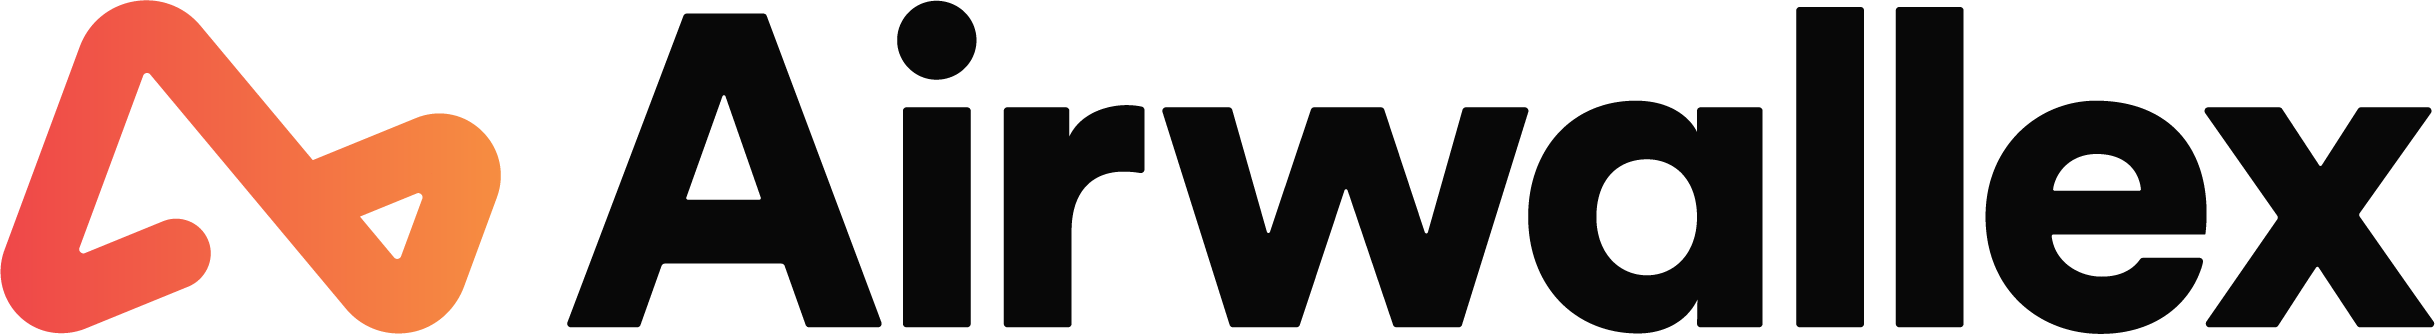 Airwallex_logo